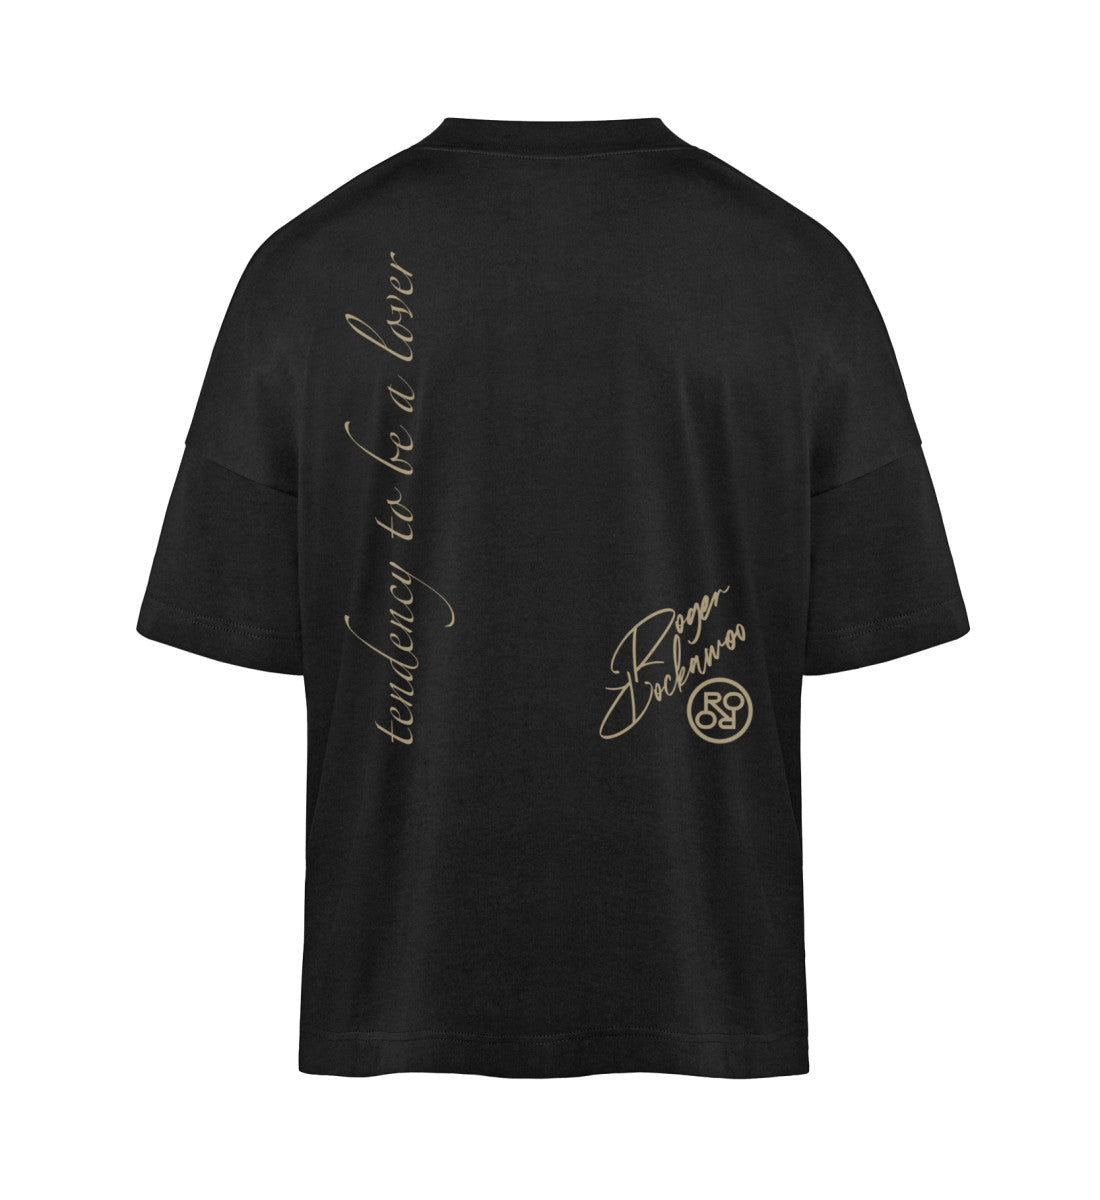 Schwarzes T-Shirt im Unisex Oversize Fit für Frauen und Männer bedruckt mit dem Design der Roger Rockawoo Kollektion Tendency to be a Lover